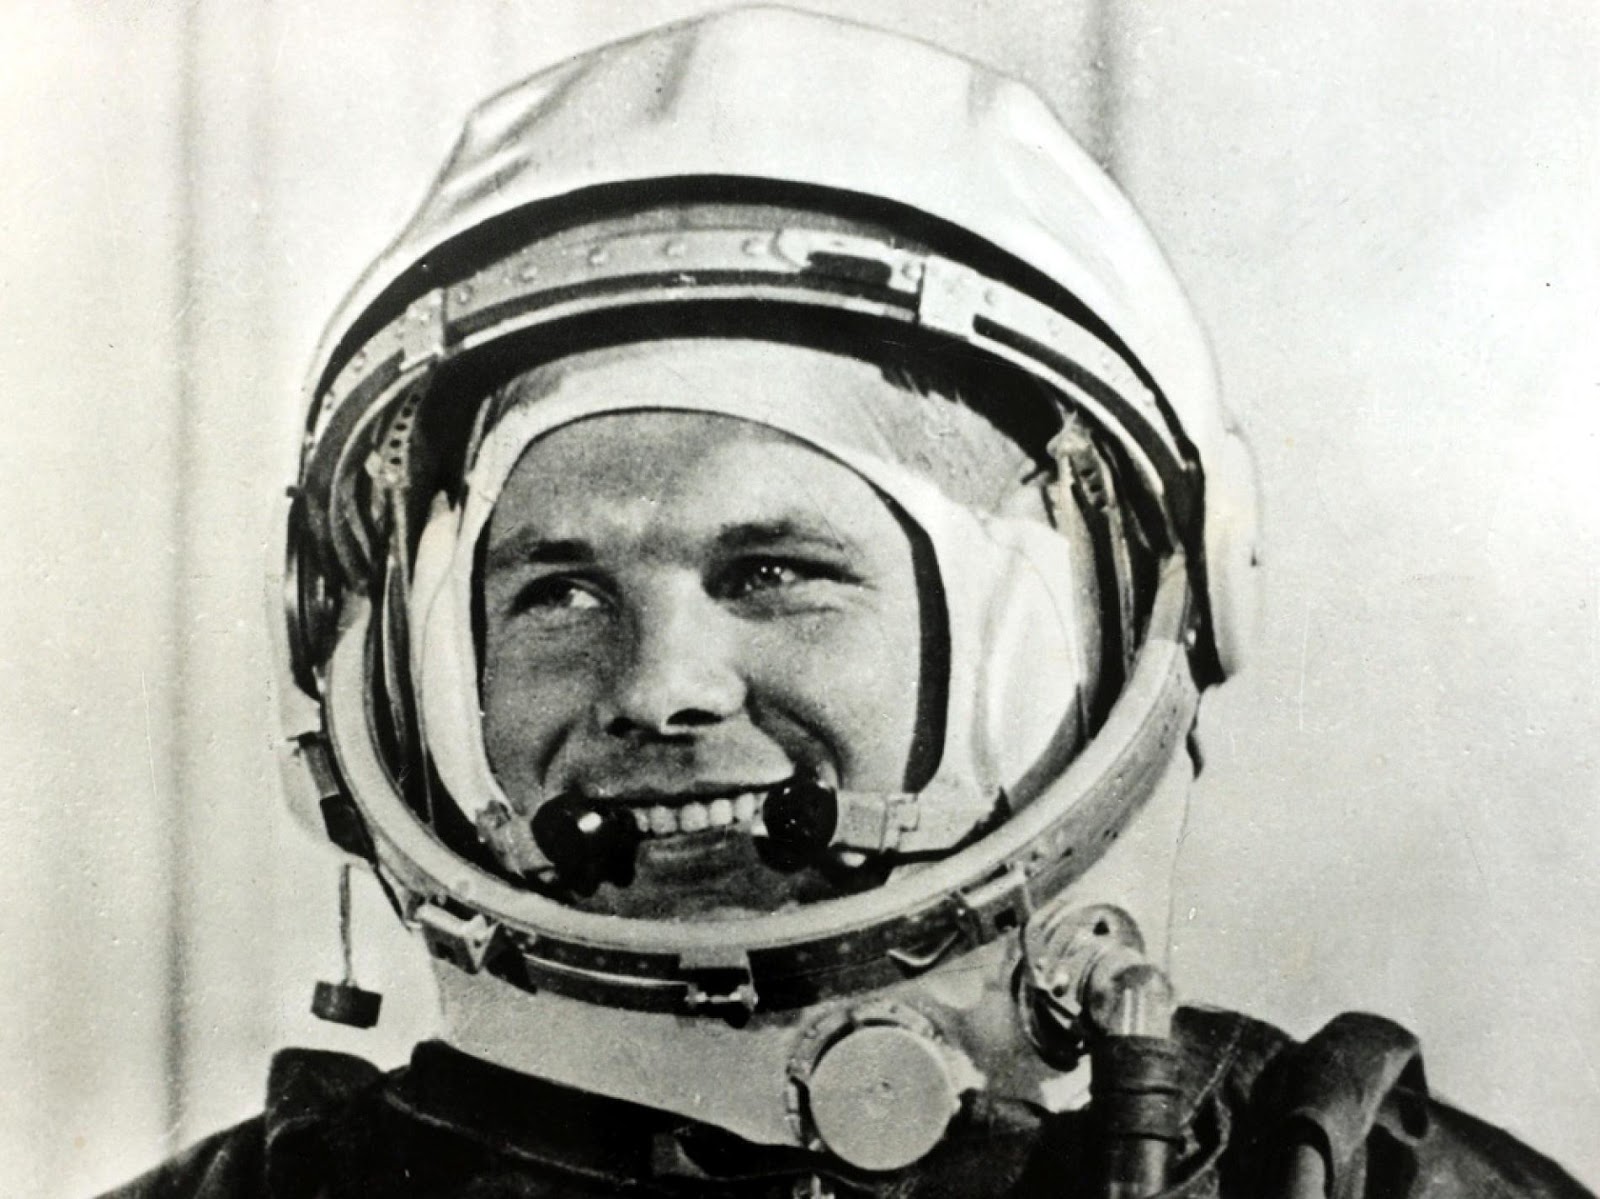 ΑΓΓΙΓΜΑ ΦΥΣΙΚΗΣ...: Σαν σήμερα ... 1961, ο Γιούρι Γκαγκάριν γίνεται ο  πρώτος άνθρωπος στο διάστημα.